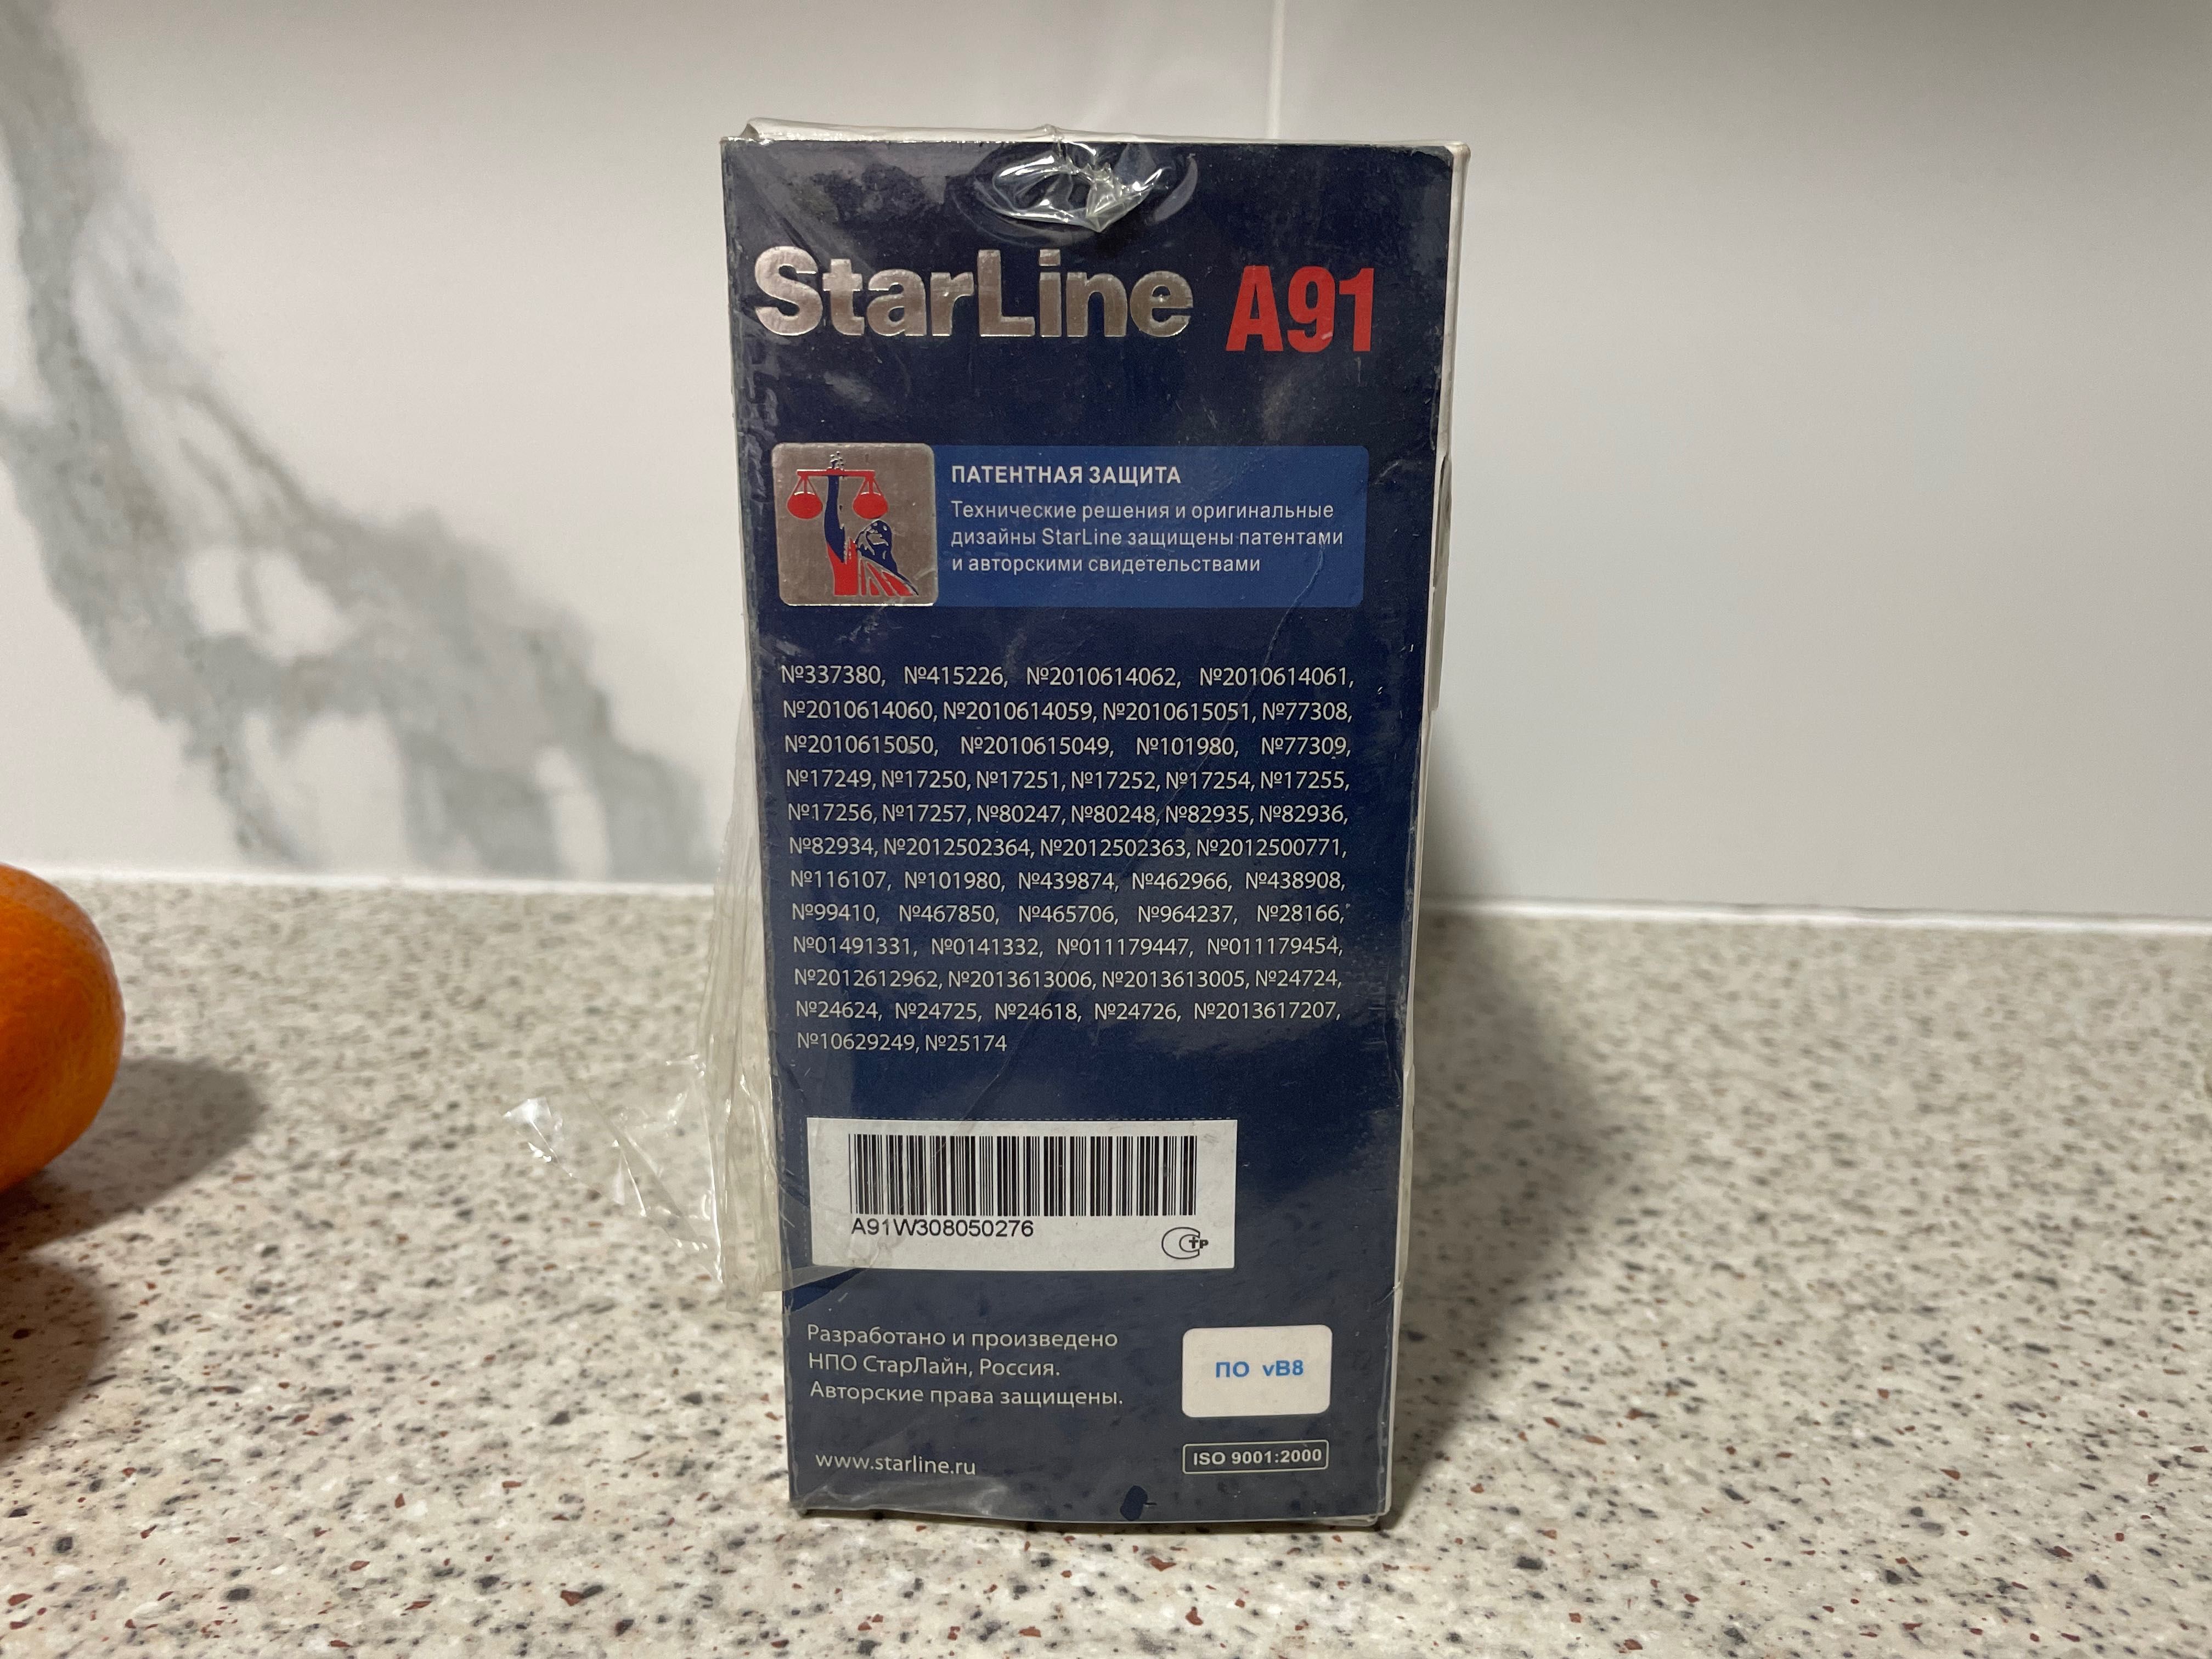 Сигнализация StarLine A91